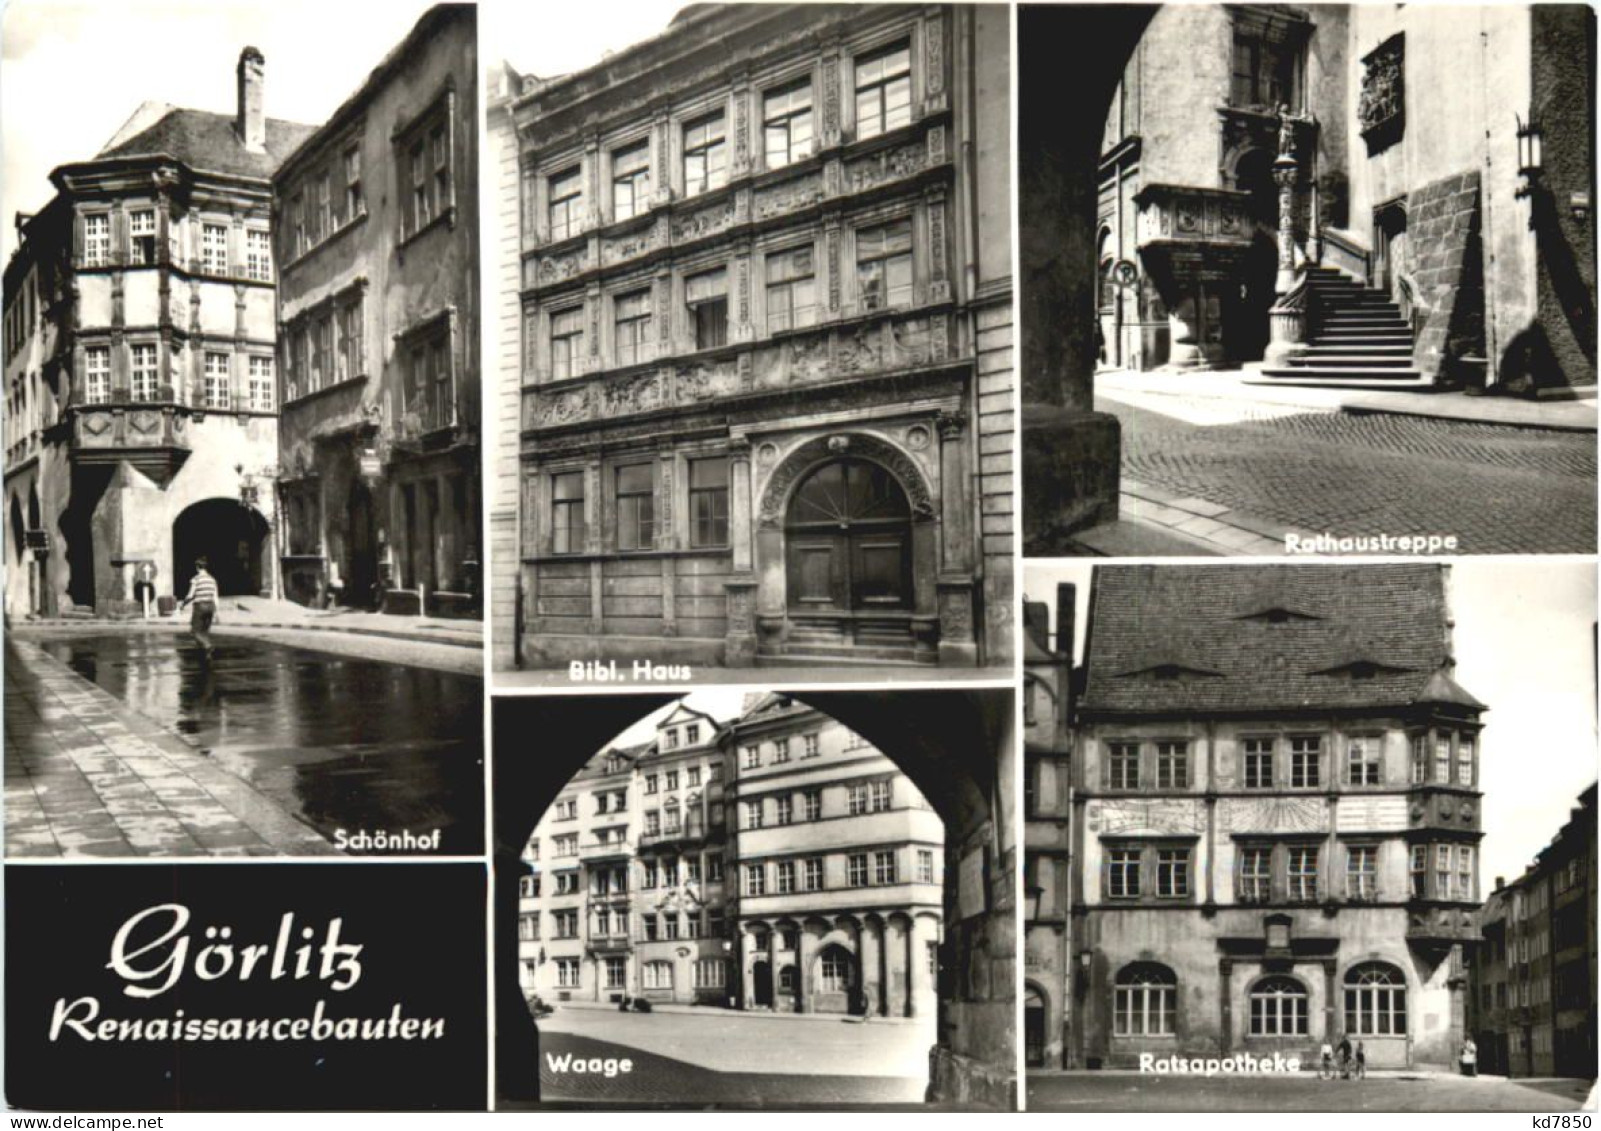 Göritz - Renaissancebauten - Görlitz